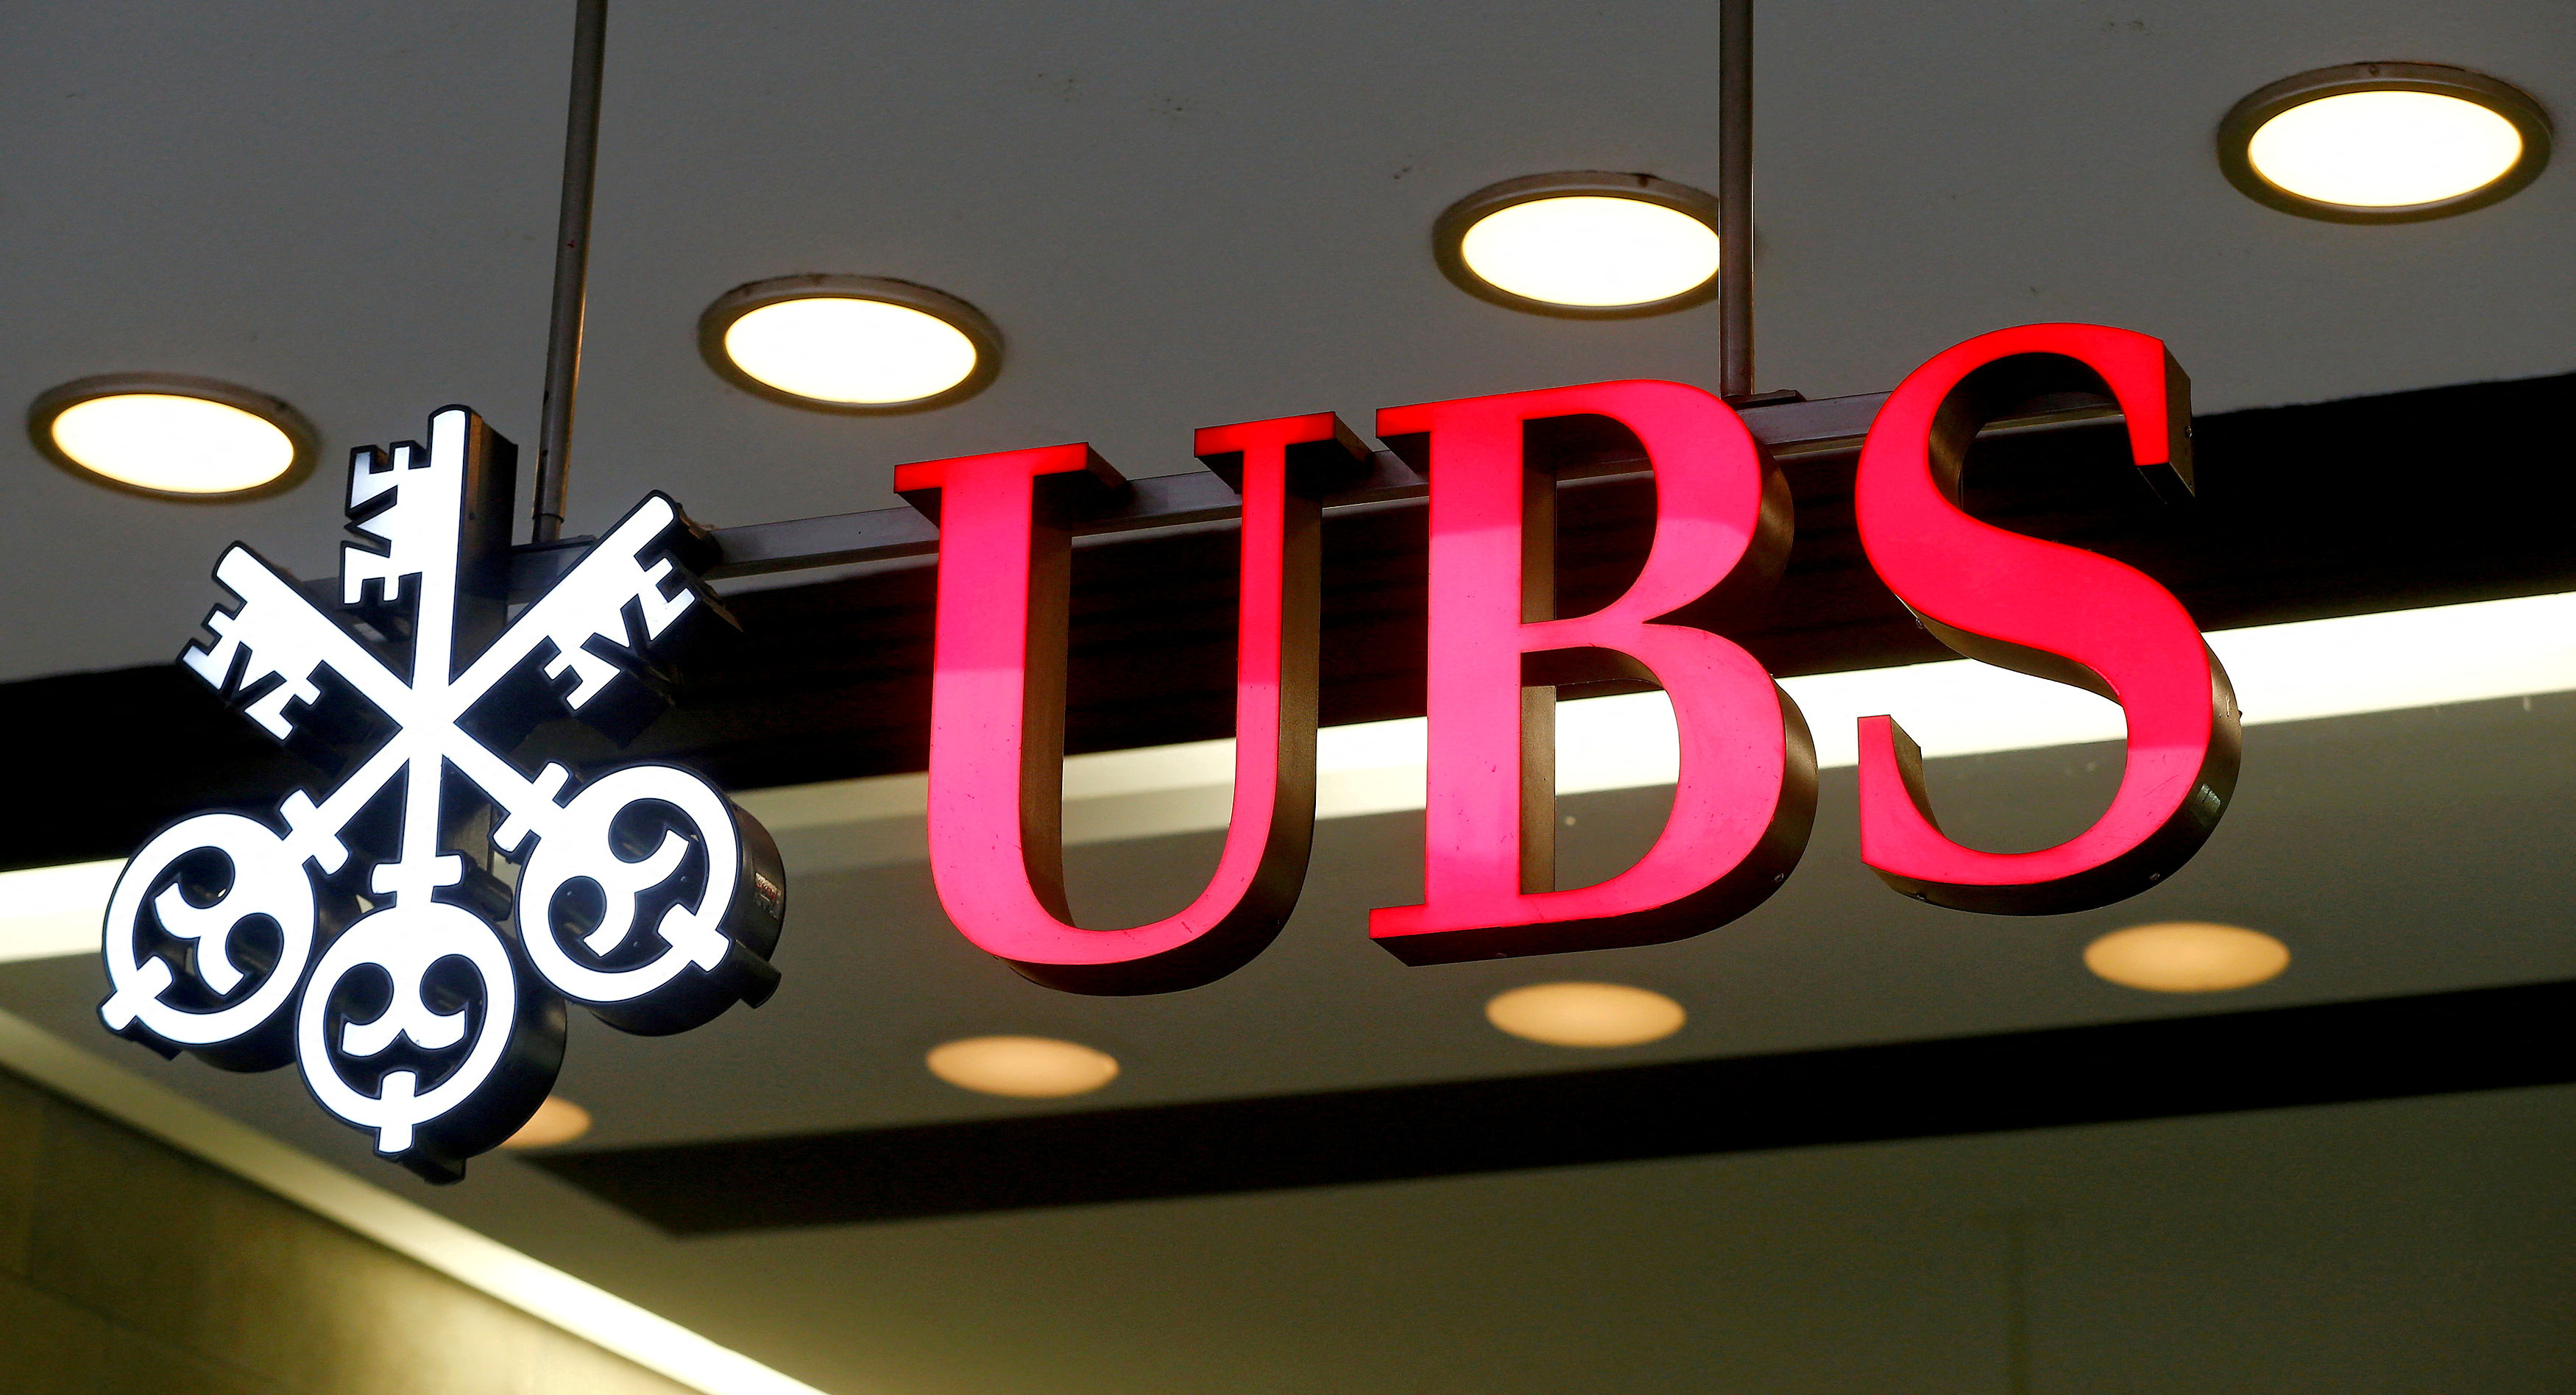 Allemagne : la banque UBS perquisitionnée dans le cadre d'une enquête sur un oligarque russe